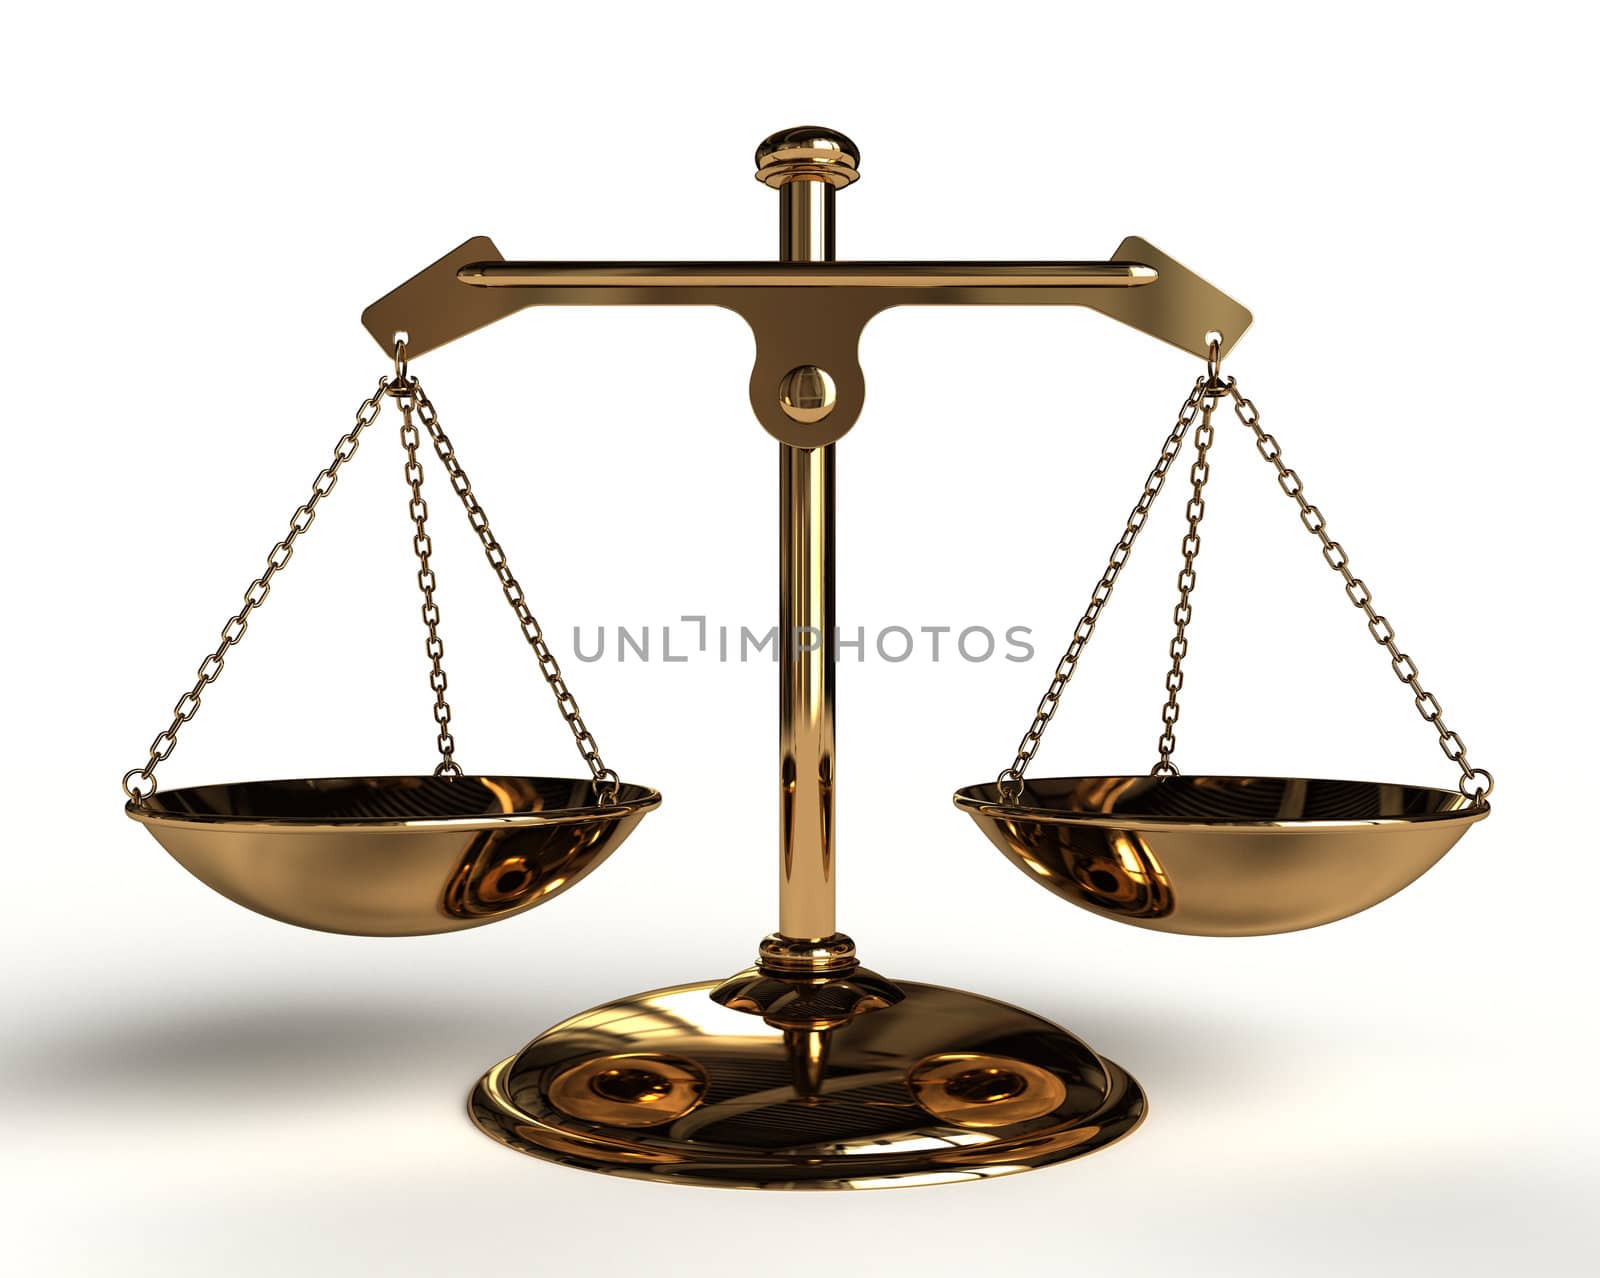 Justice concept - Gold Balance - 3D render image.